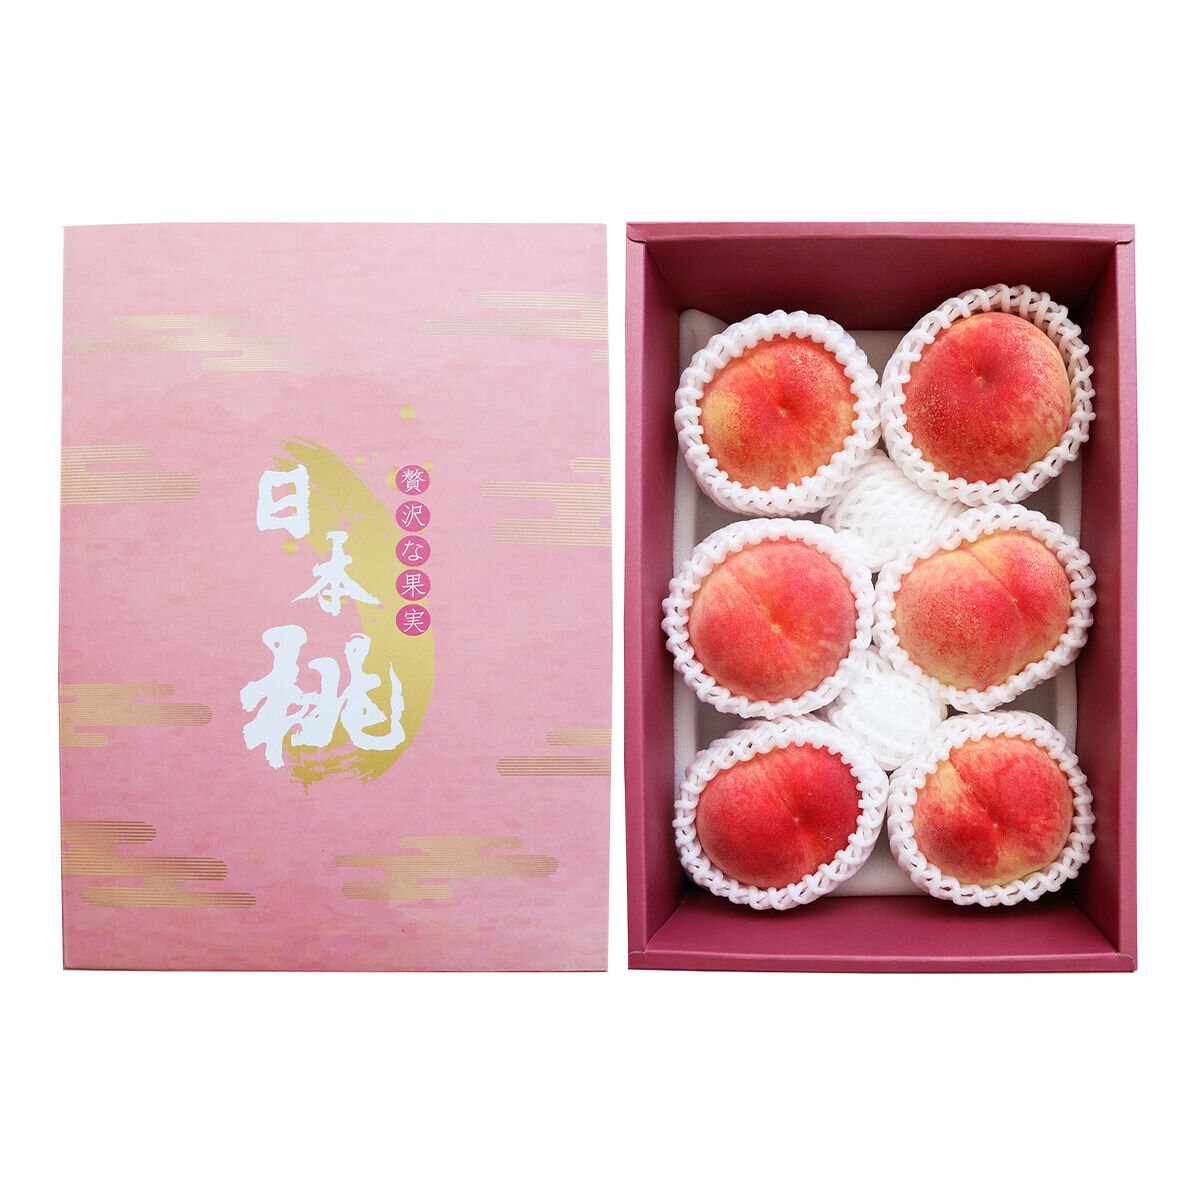 日本水蜜桃禮盒 1.8公斤 (6-7入)